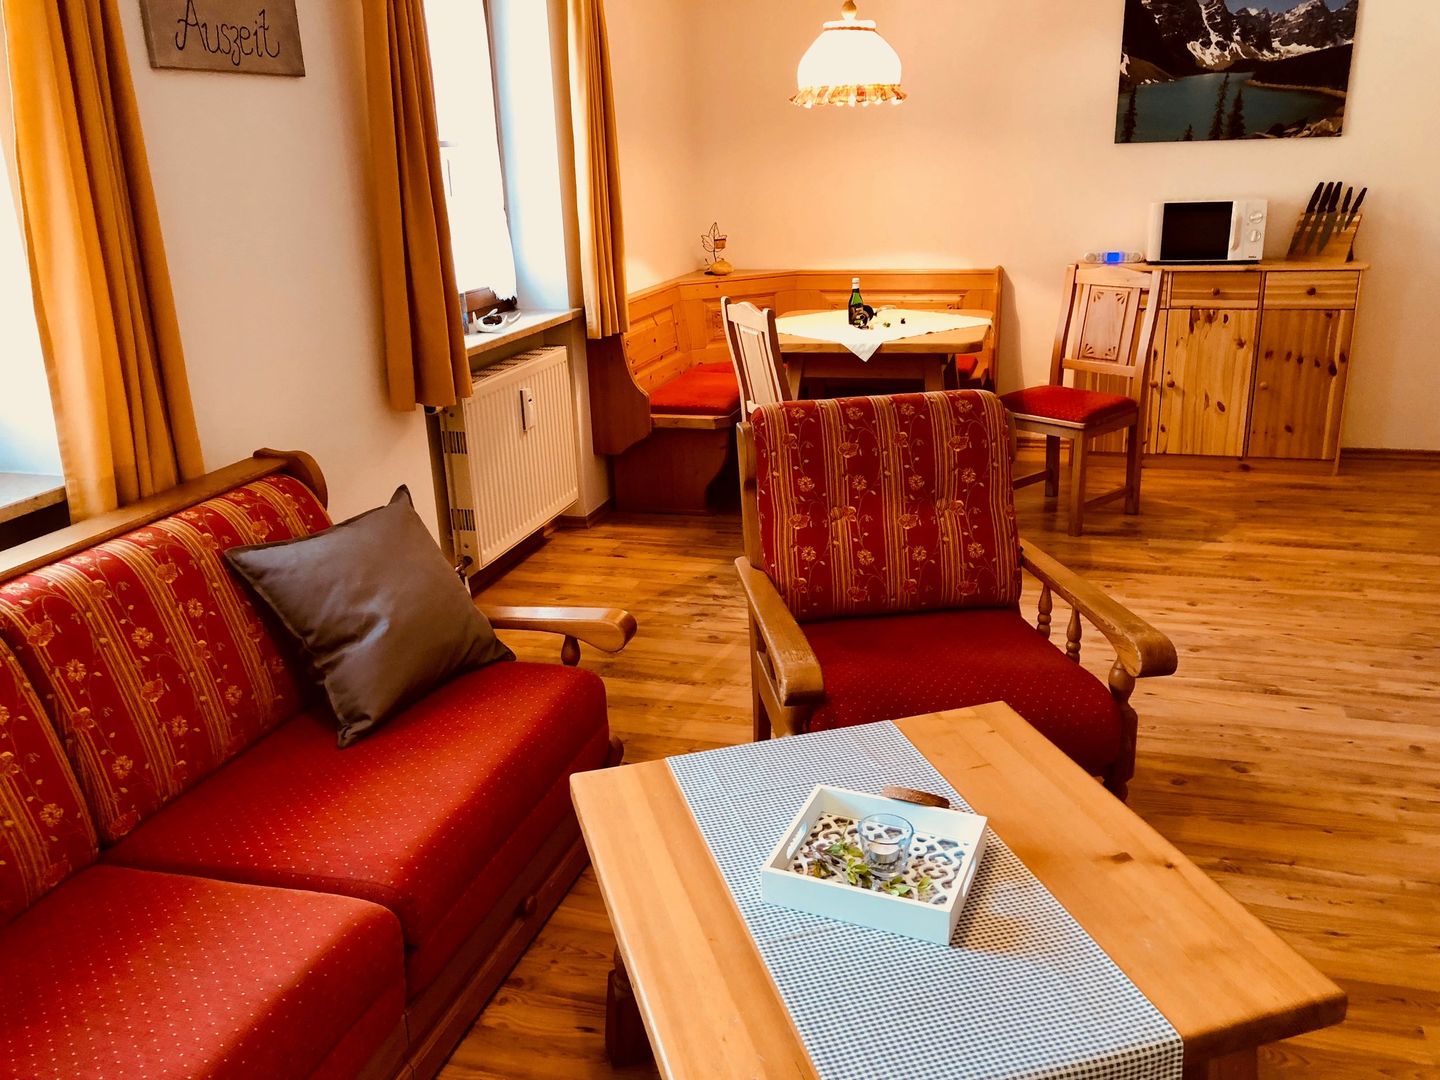 NU met korting! skivakantie Berchtesgadener Land ❄ Appartement Auszeit/Sonnwend 7 Dagen  €259,-